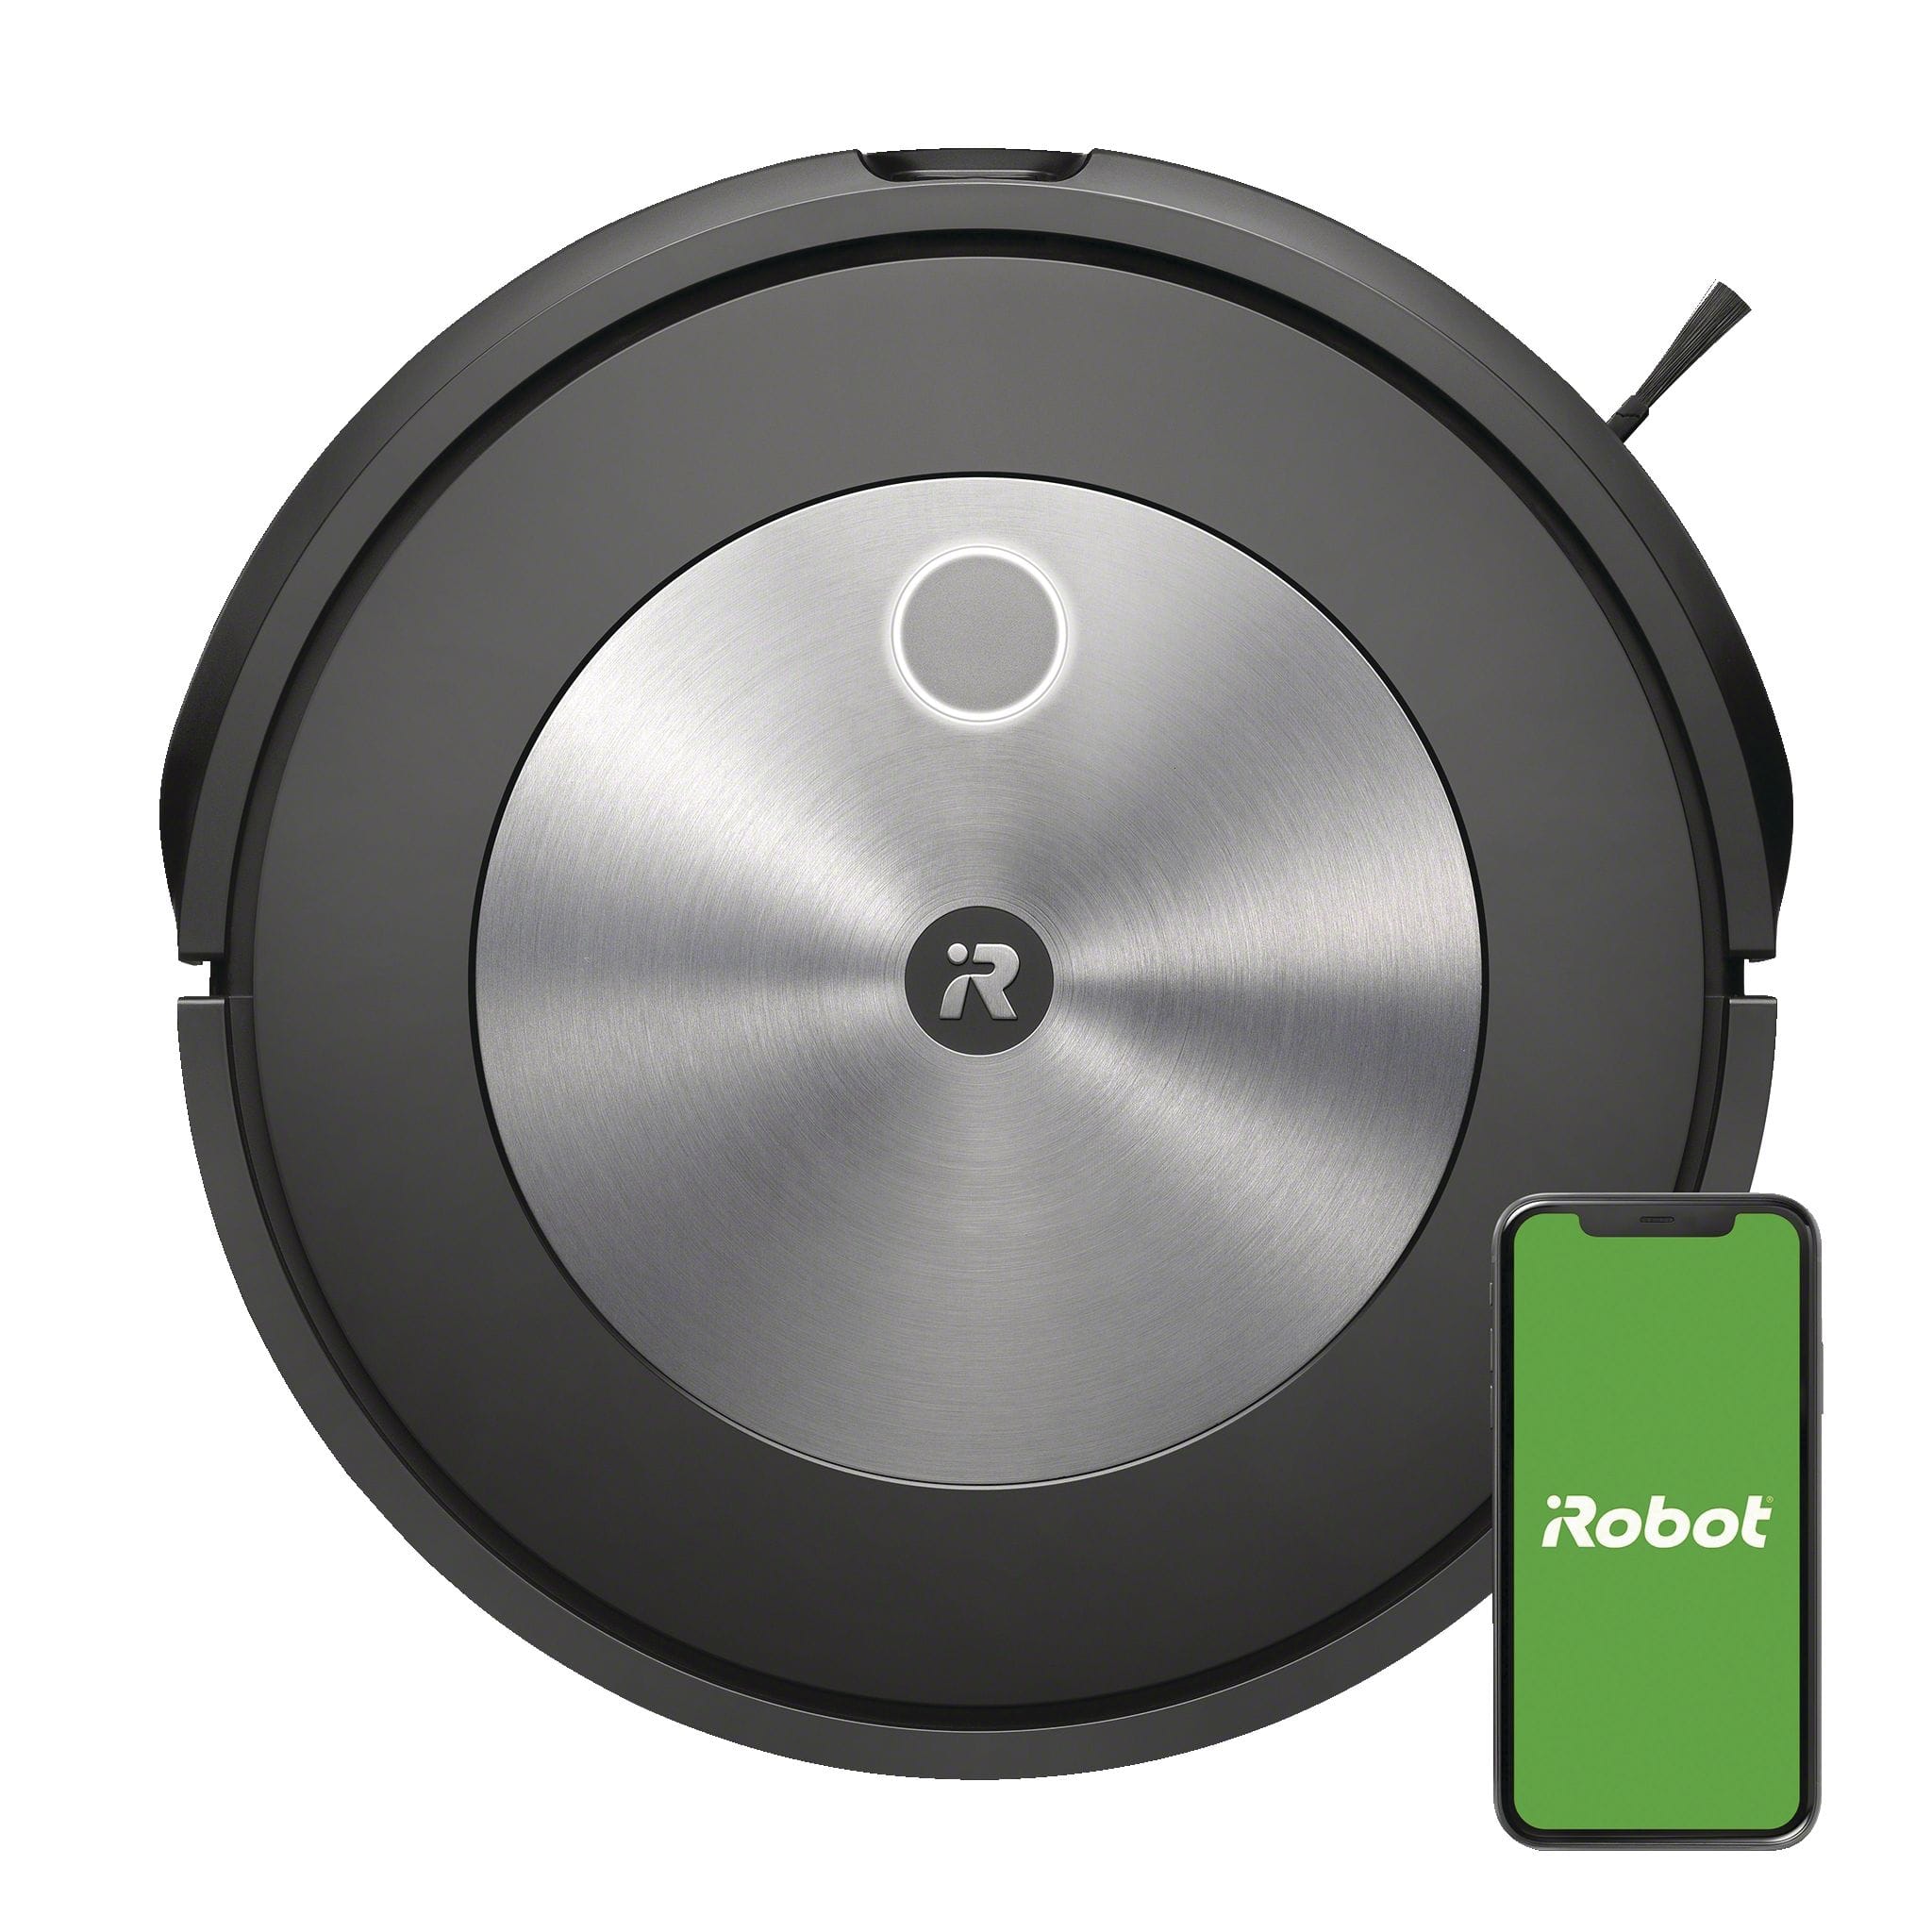 Aspirateur robot Roomba : comment ça marche, est-ce que ça vaut le coup ?